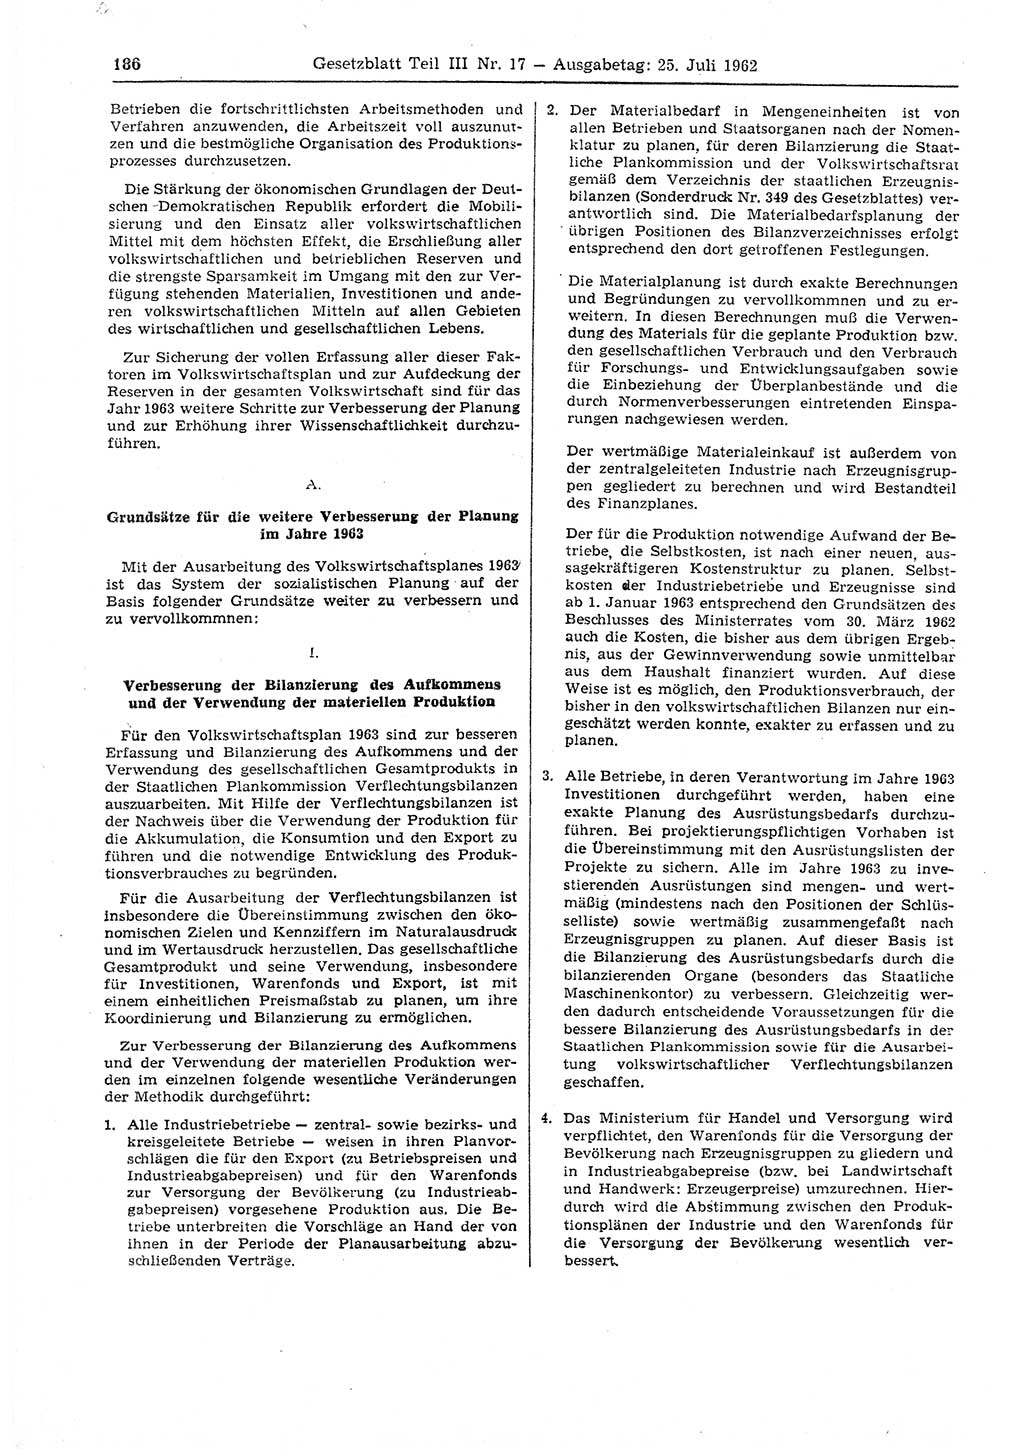 Gesetzblatt (GBl.) der Deutschen Demokratischen Republik (DDR) Teil ⅠⅠⅠ 1962, Seite 186 (GBl. DDR ⅠⅠⅠ 1962, S. 186)